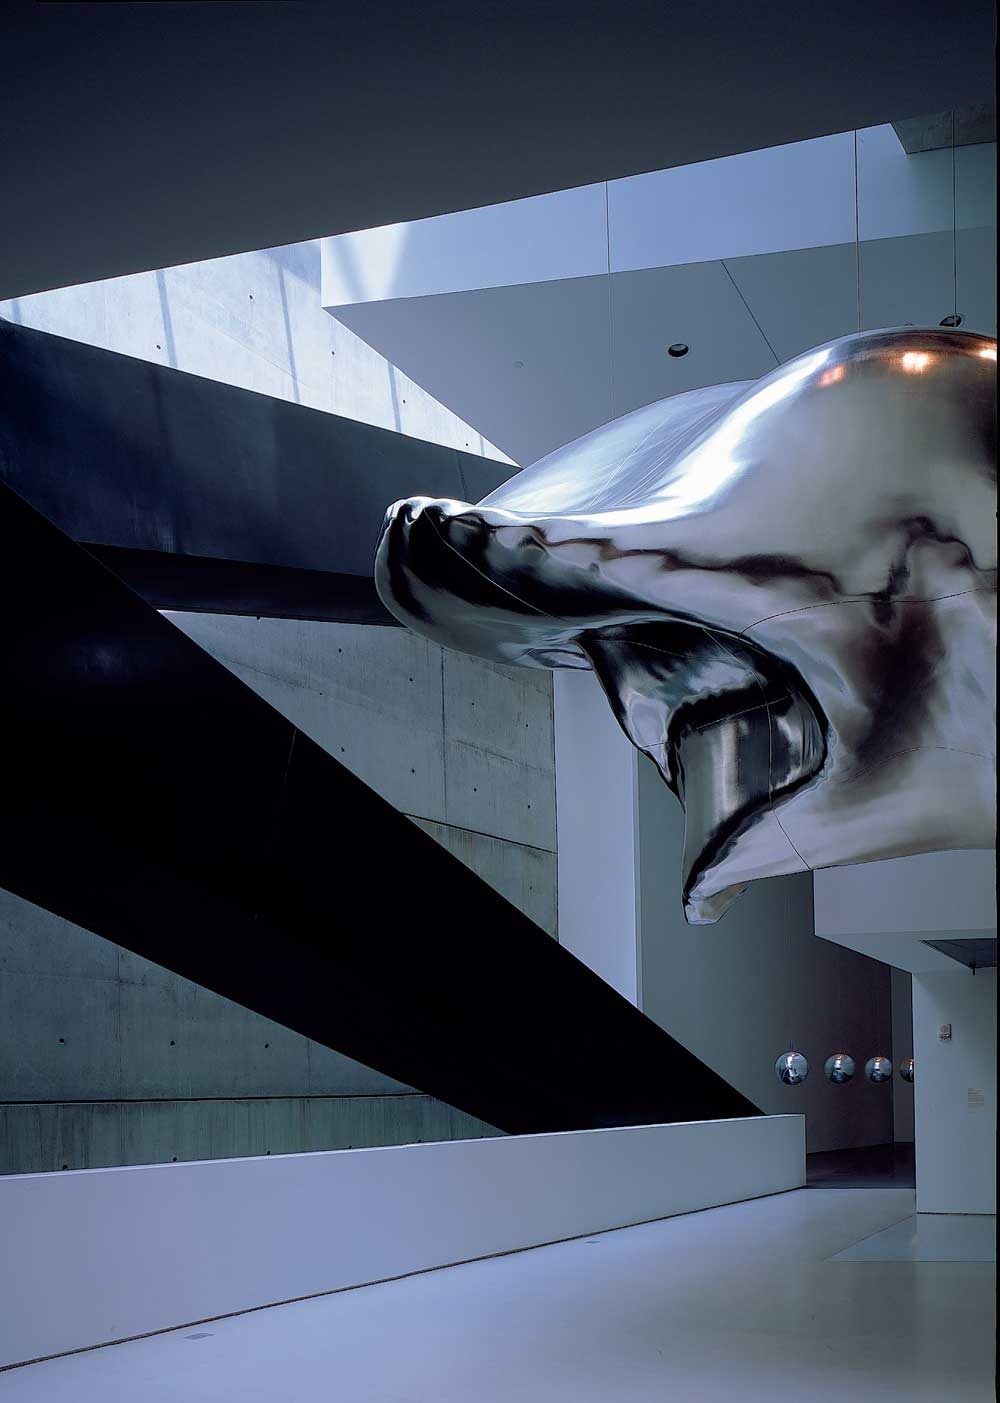 Déployé sur plus de 25 000 m2, le Rosenthal Contemporary Arts Center de Cincinnati est l’un des premiers musées réalisés par Zaha Hadid, tel un manifeste de son architecture souvent décrite comme “déconstructiviste”. Ici, vue de l’espace exposant la sculpture Cloud no 1 d’Iñigo Manglano-Ovalle en 2003.